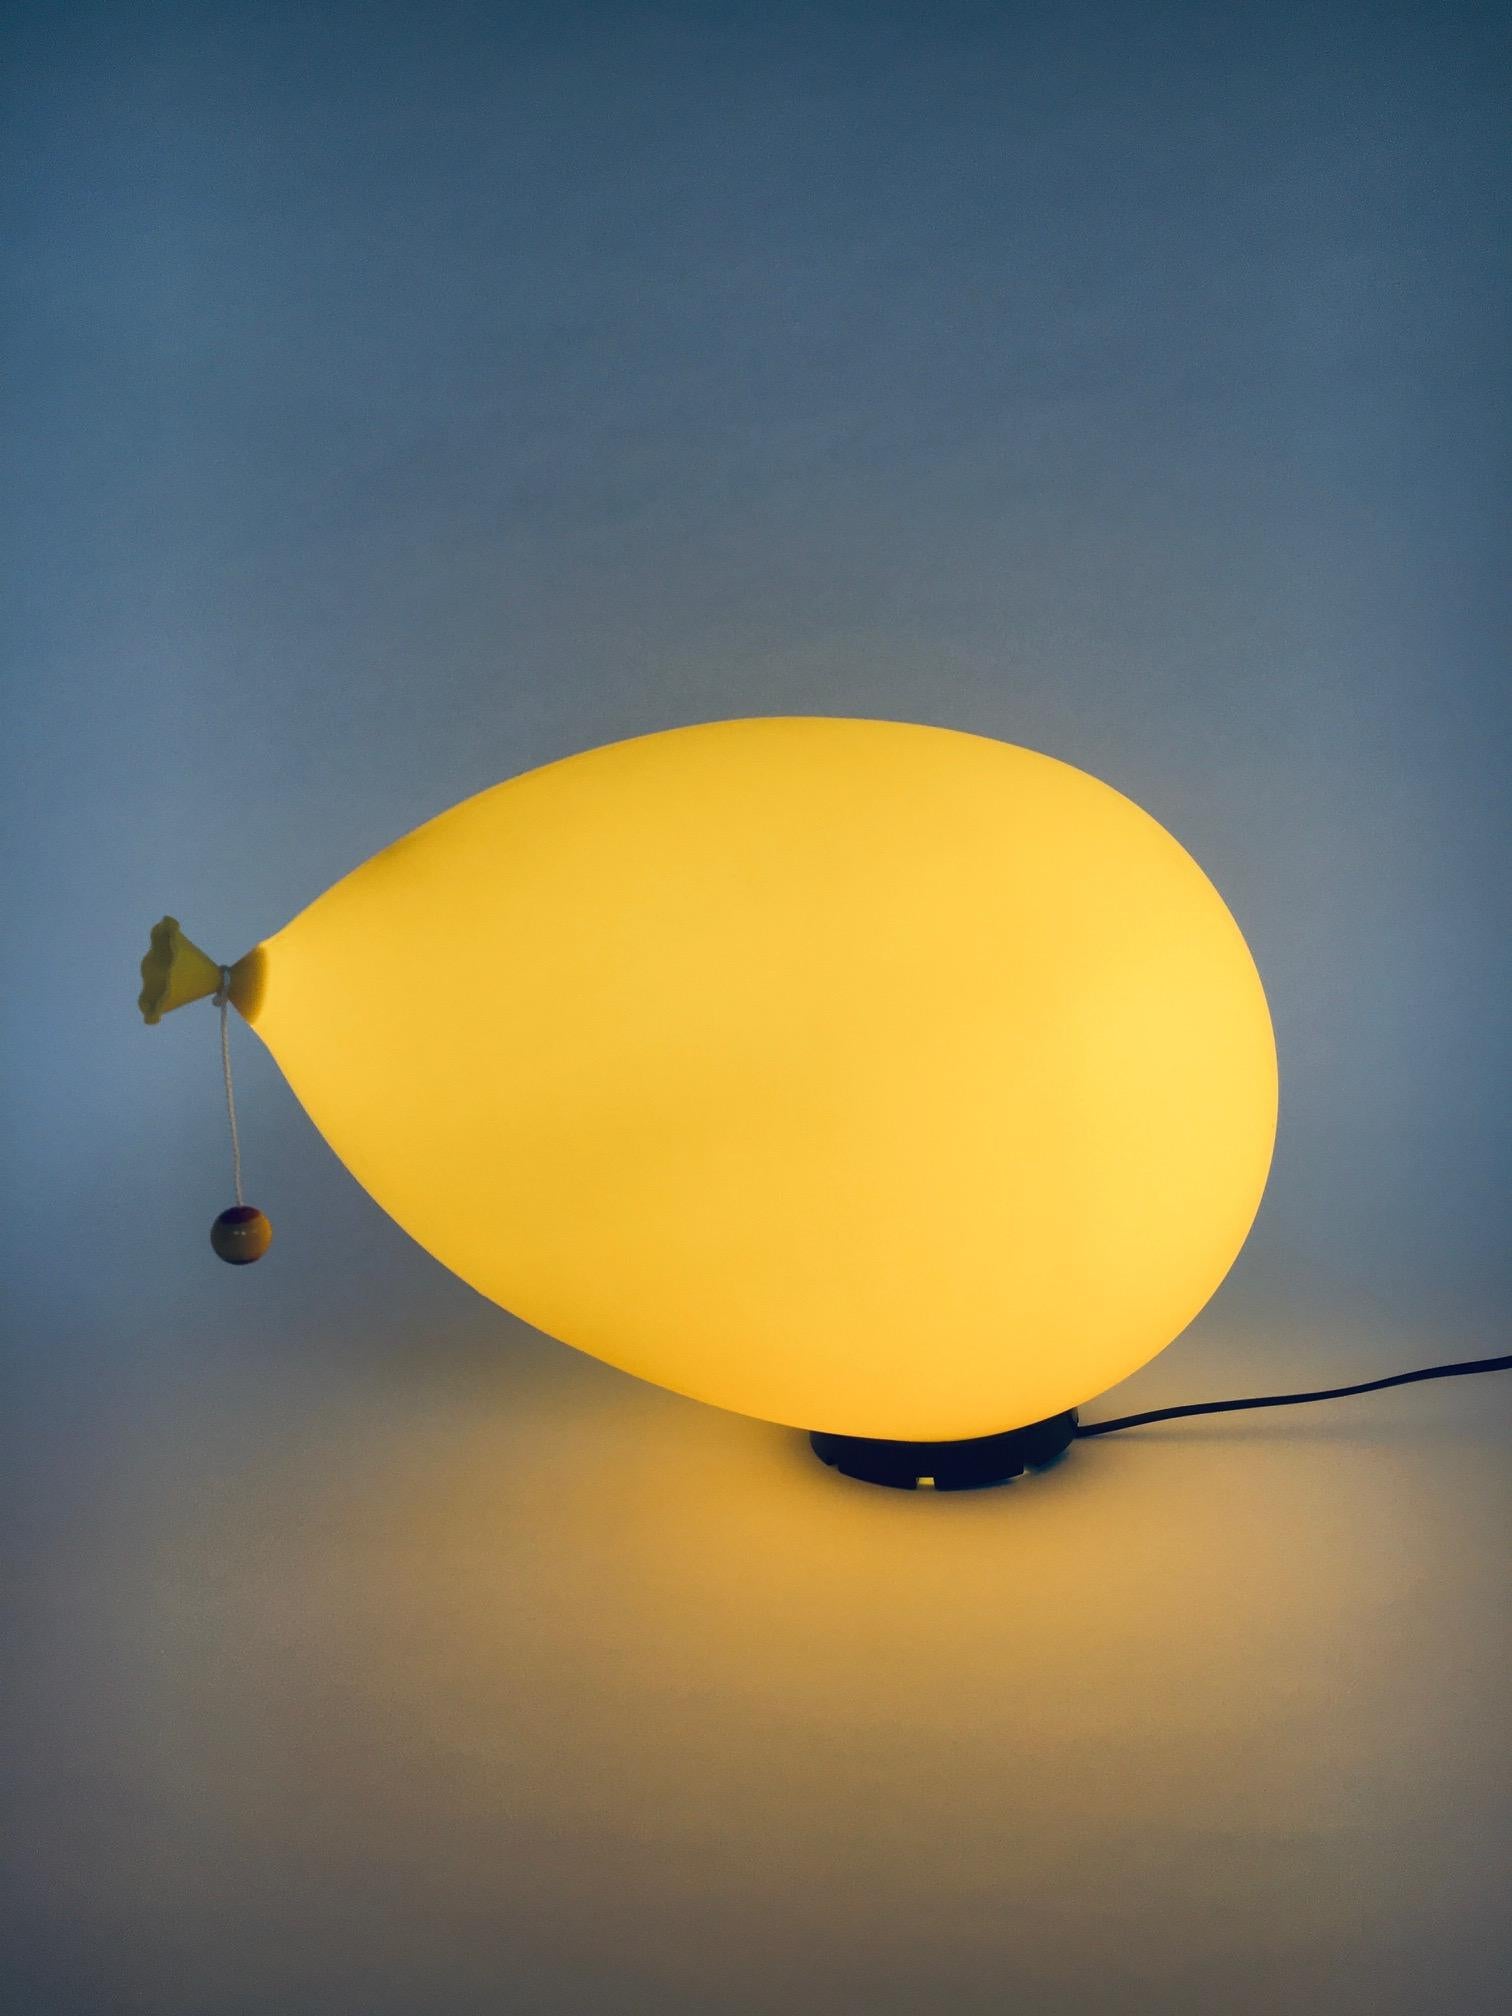 Lampe BALLOON XXL au design postmoderne vintage par Yves Christin pour Bilumen, fabriquée en Italie dans les années 1980. Lampe murale, lampe de table ou lampe de sol en plastique, version jaune. Il s'agit de la version la plus large. Numéro de